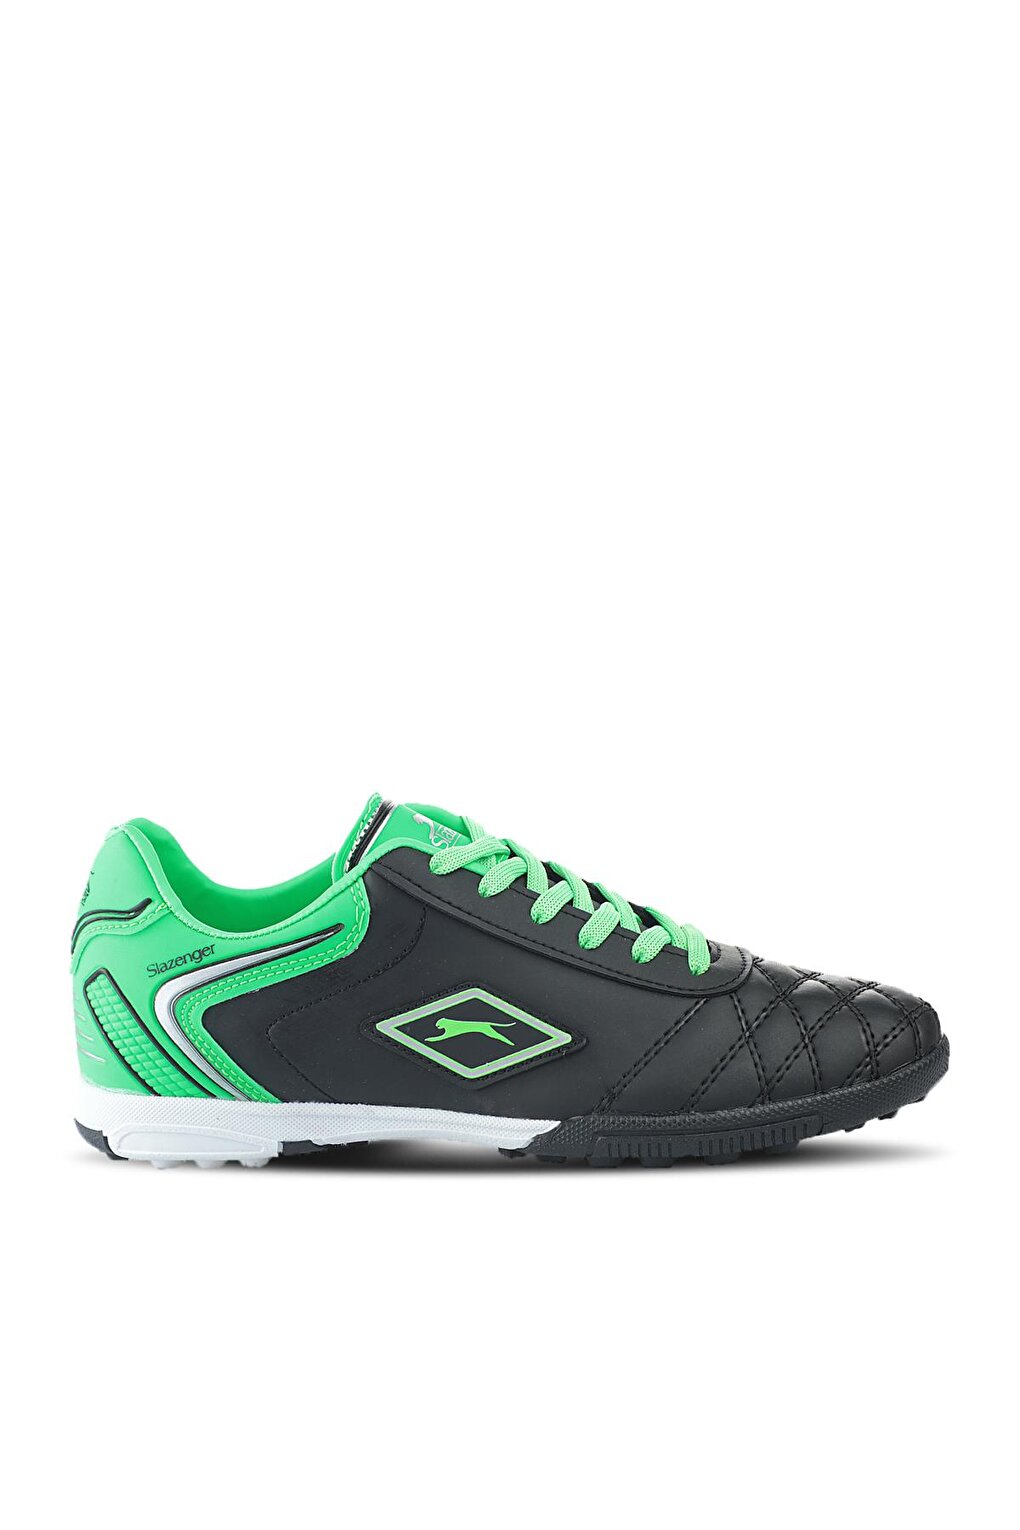 Футбольные кроссовки для мальчиков HUGO HS Astroturf, черные/зеленые SLAZENGER proskit 89407a черно зеленый